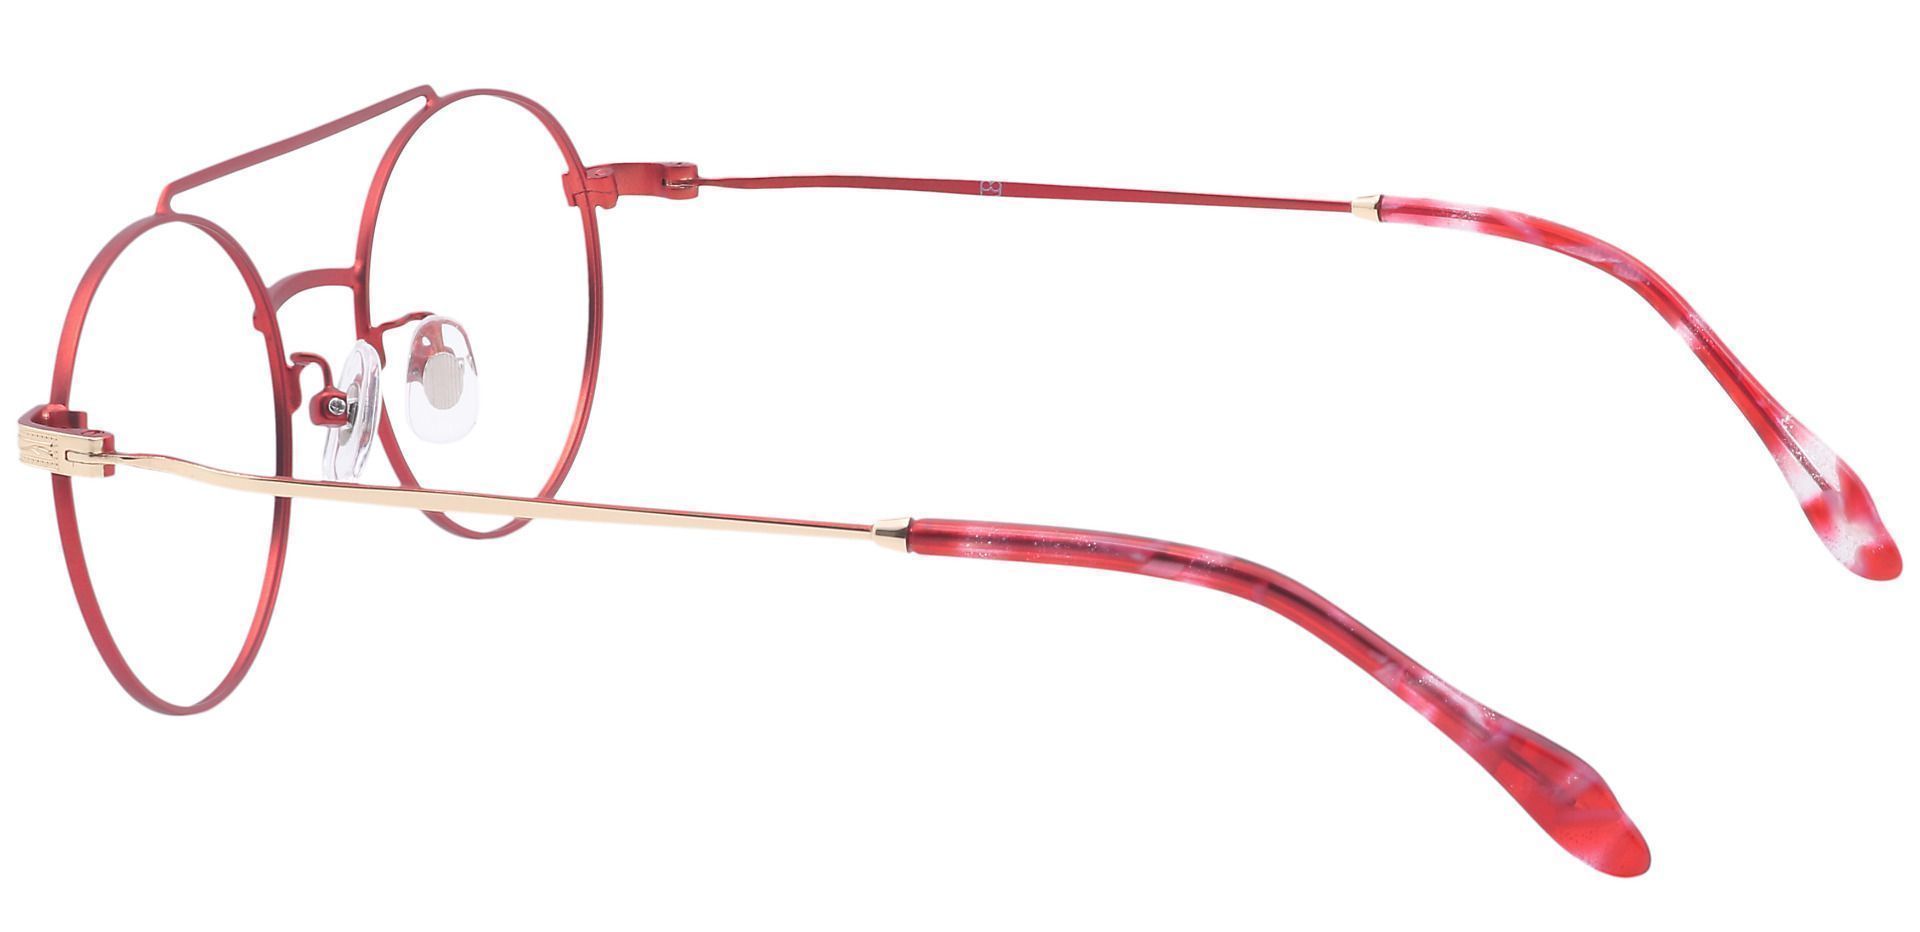 Julia Oval Eyeglasses Frame - Red